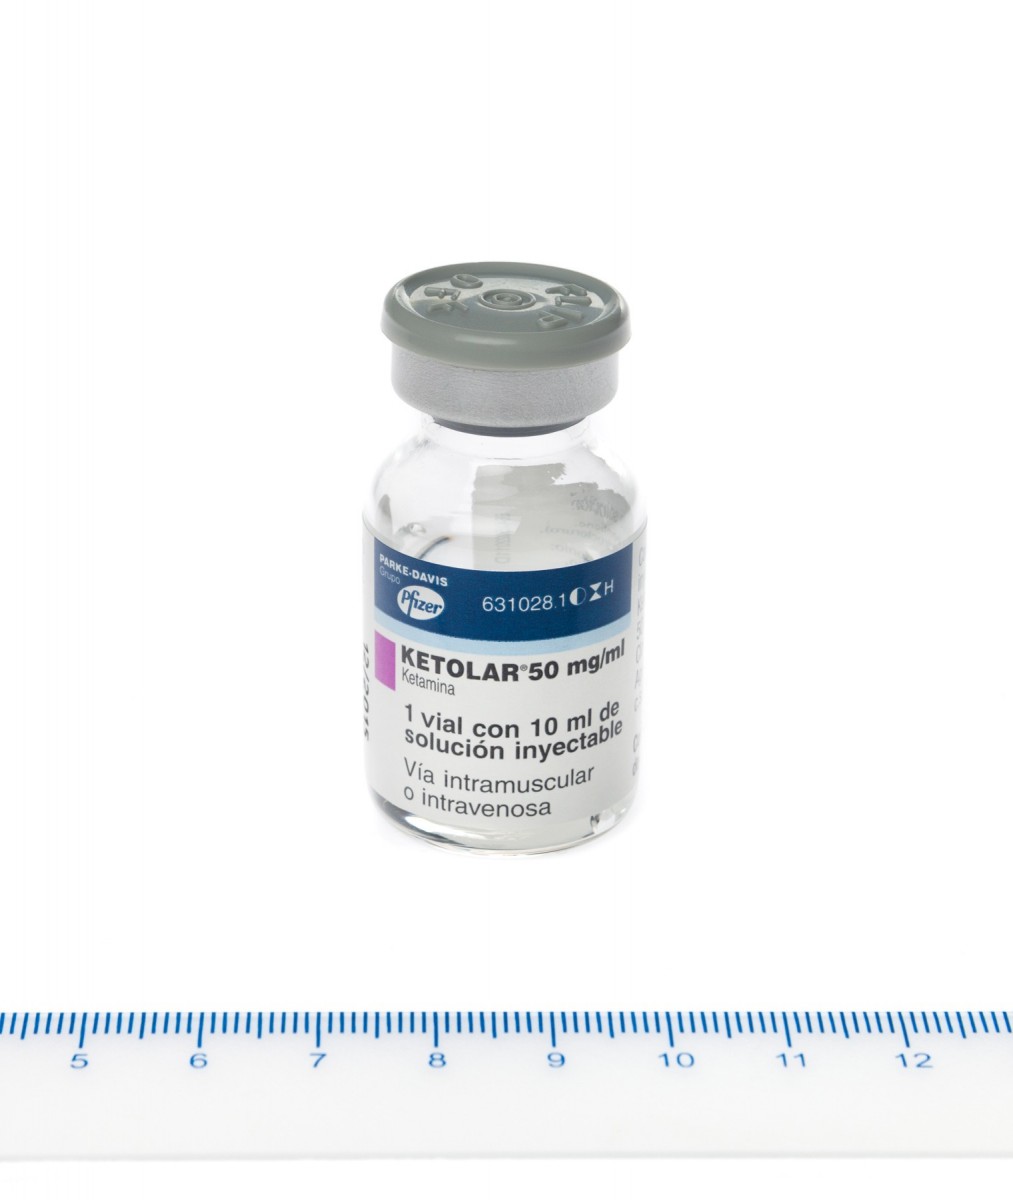 KETOLAR 50 mg/ml SOLUCION INYECTABLE , 1 vial de 10 ml fotografía de la forma farmacéutica.